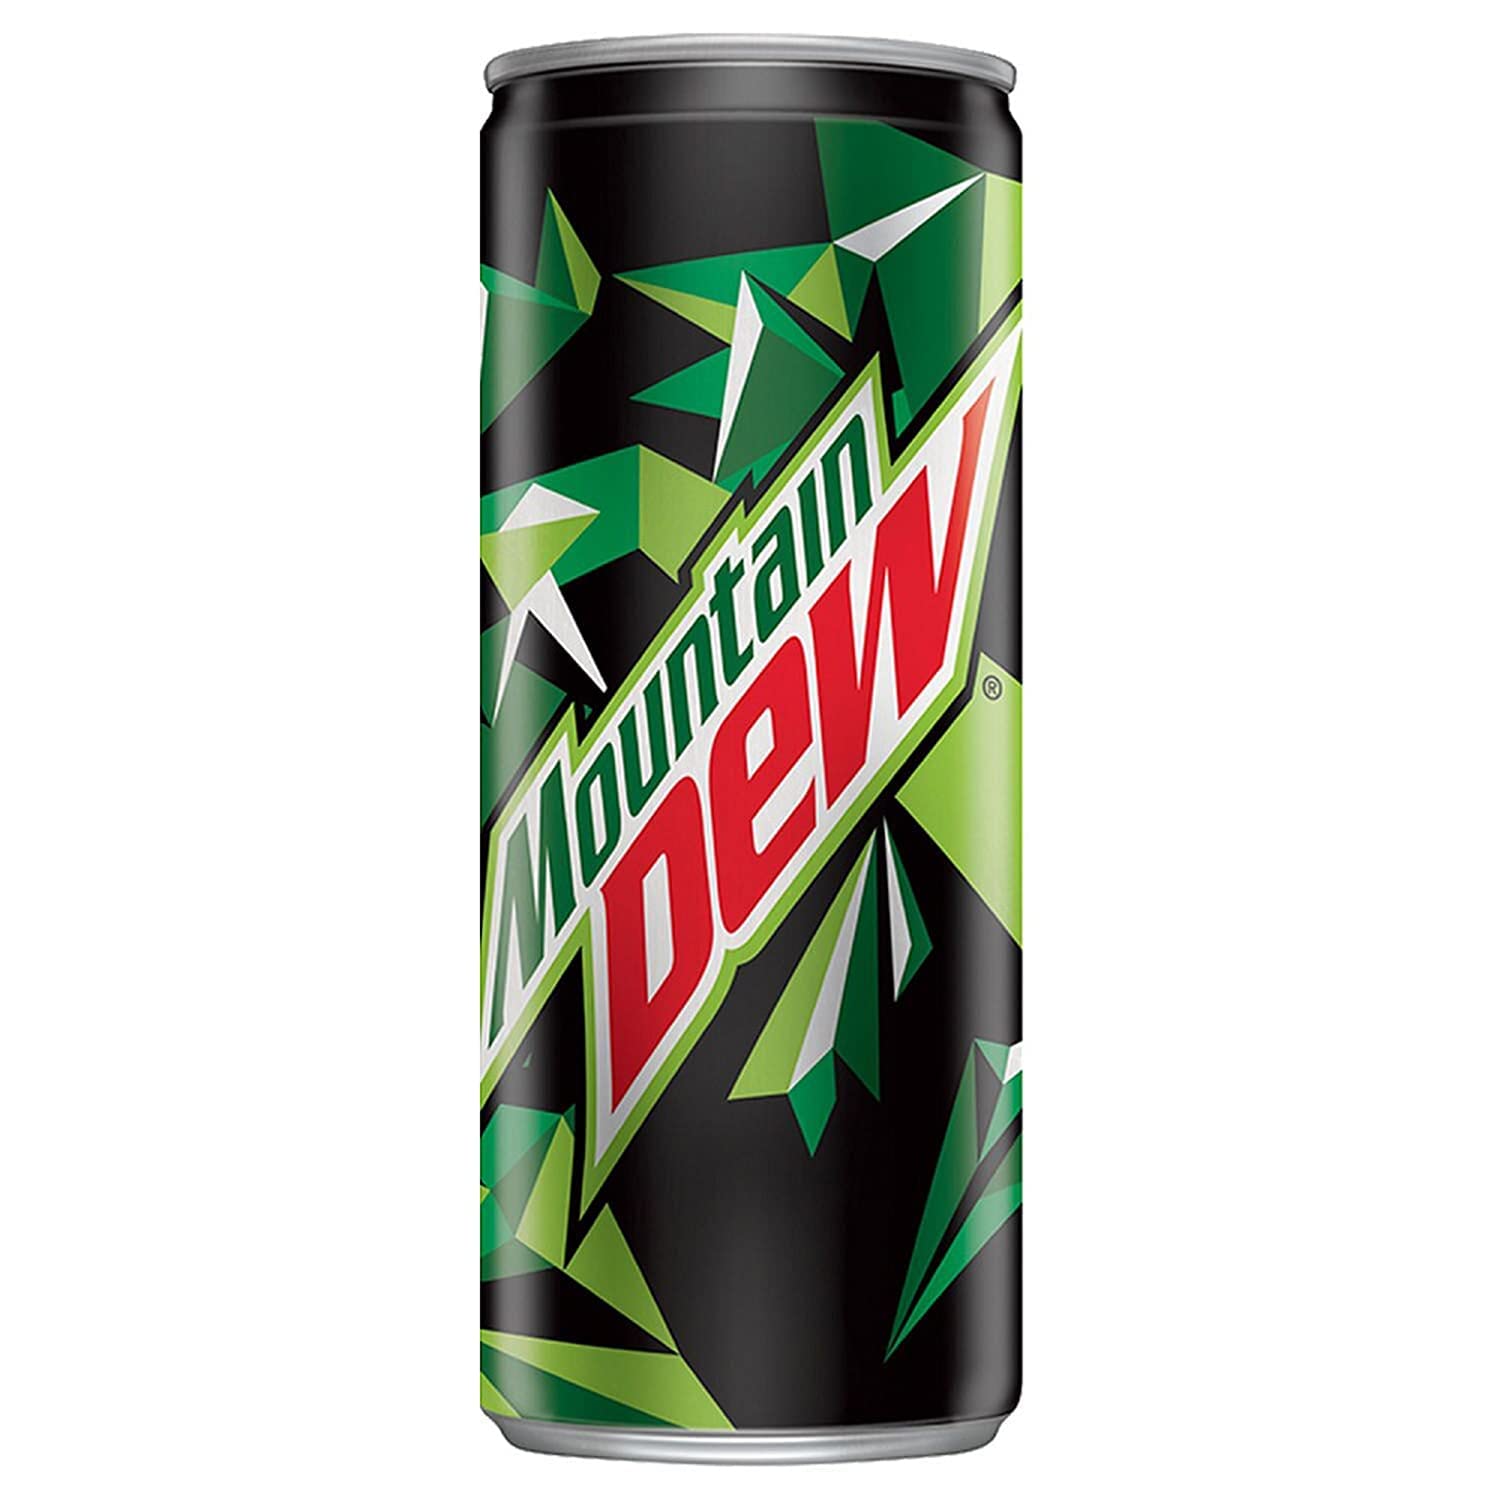 Mountain Dew soft drink brands